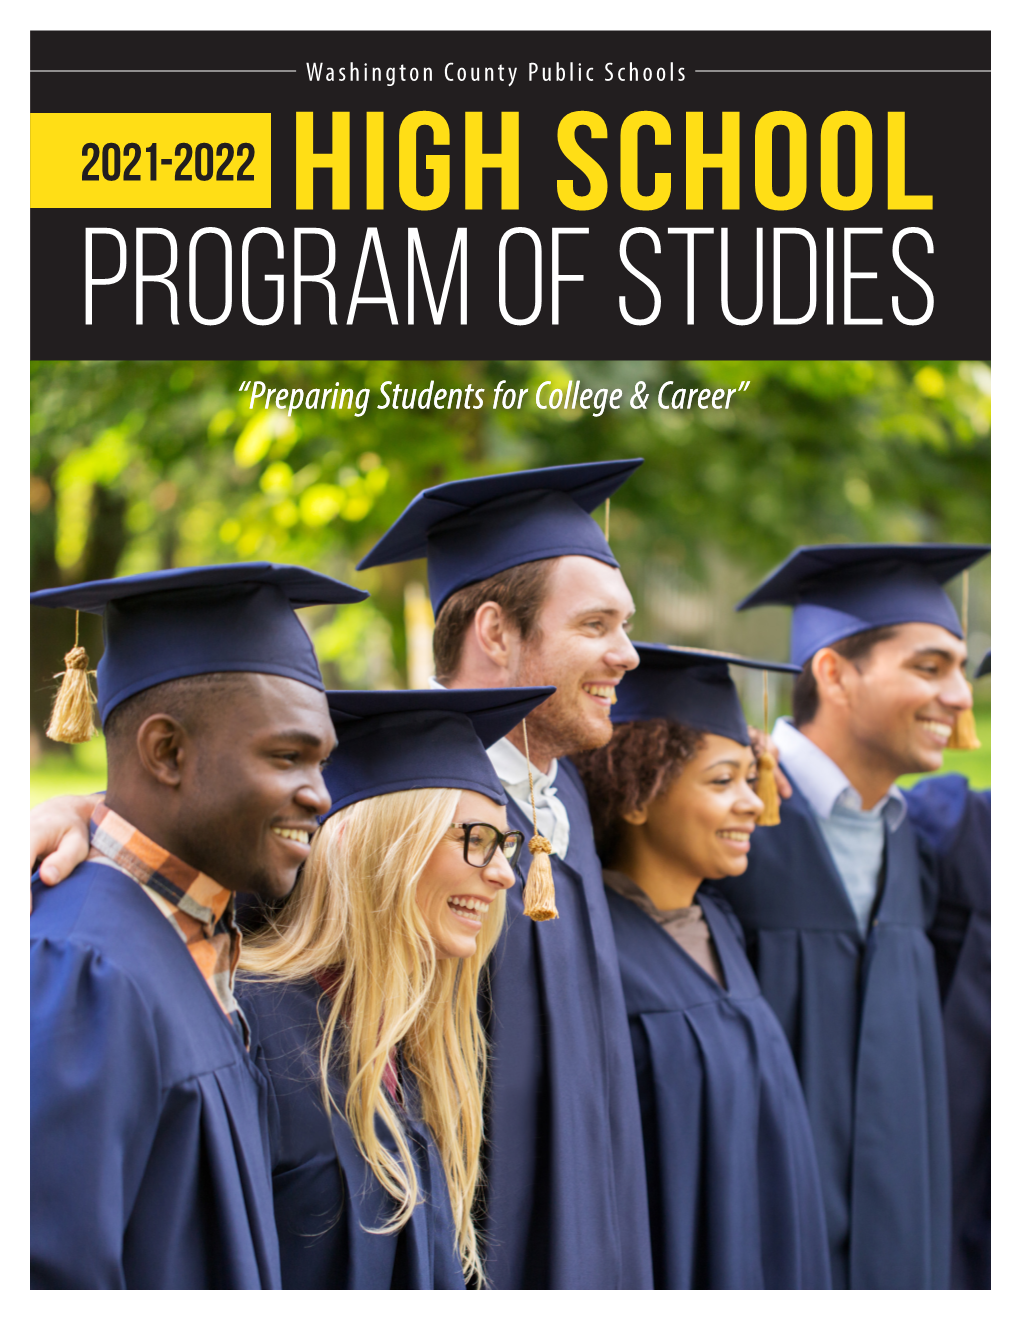 High School Program of Studies (2021-2022)